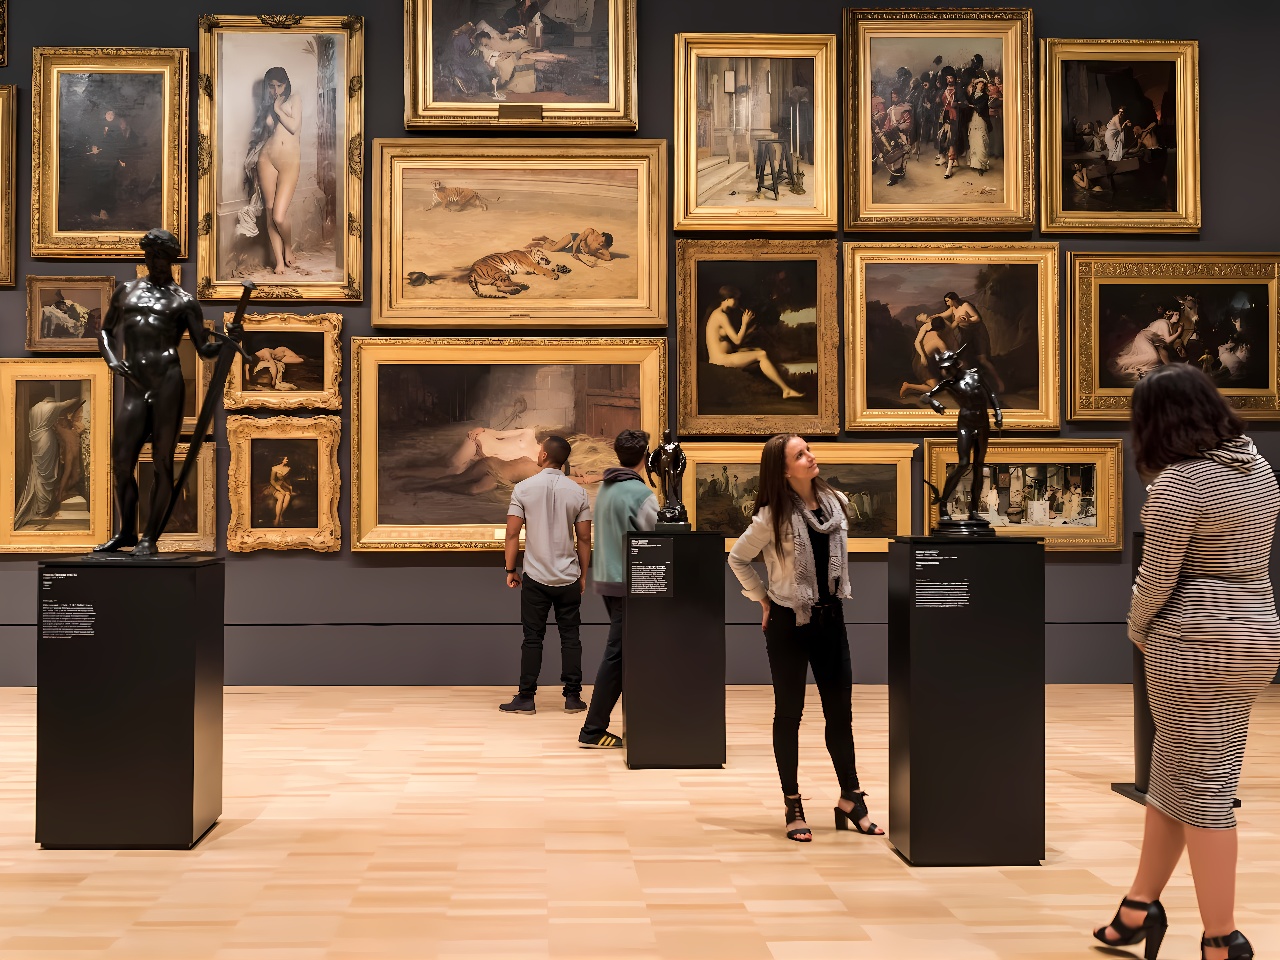 图片展示了几位参观者在艺术画廊内欣赏挂在墙上的多幅画作和摆放在地面上的雕塑。